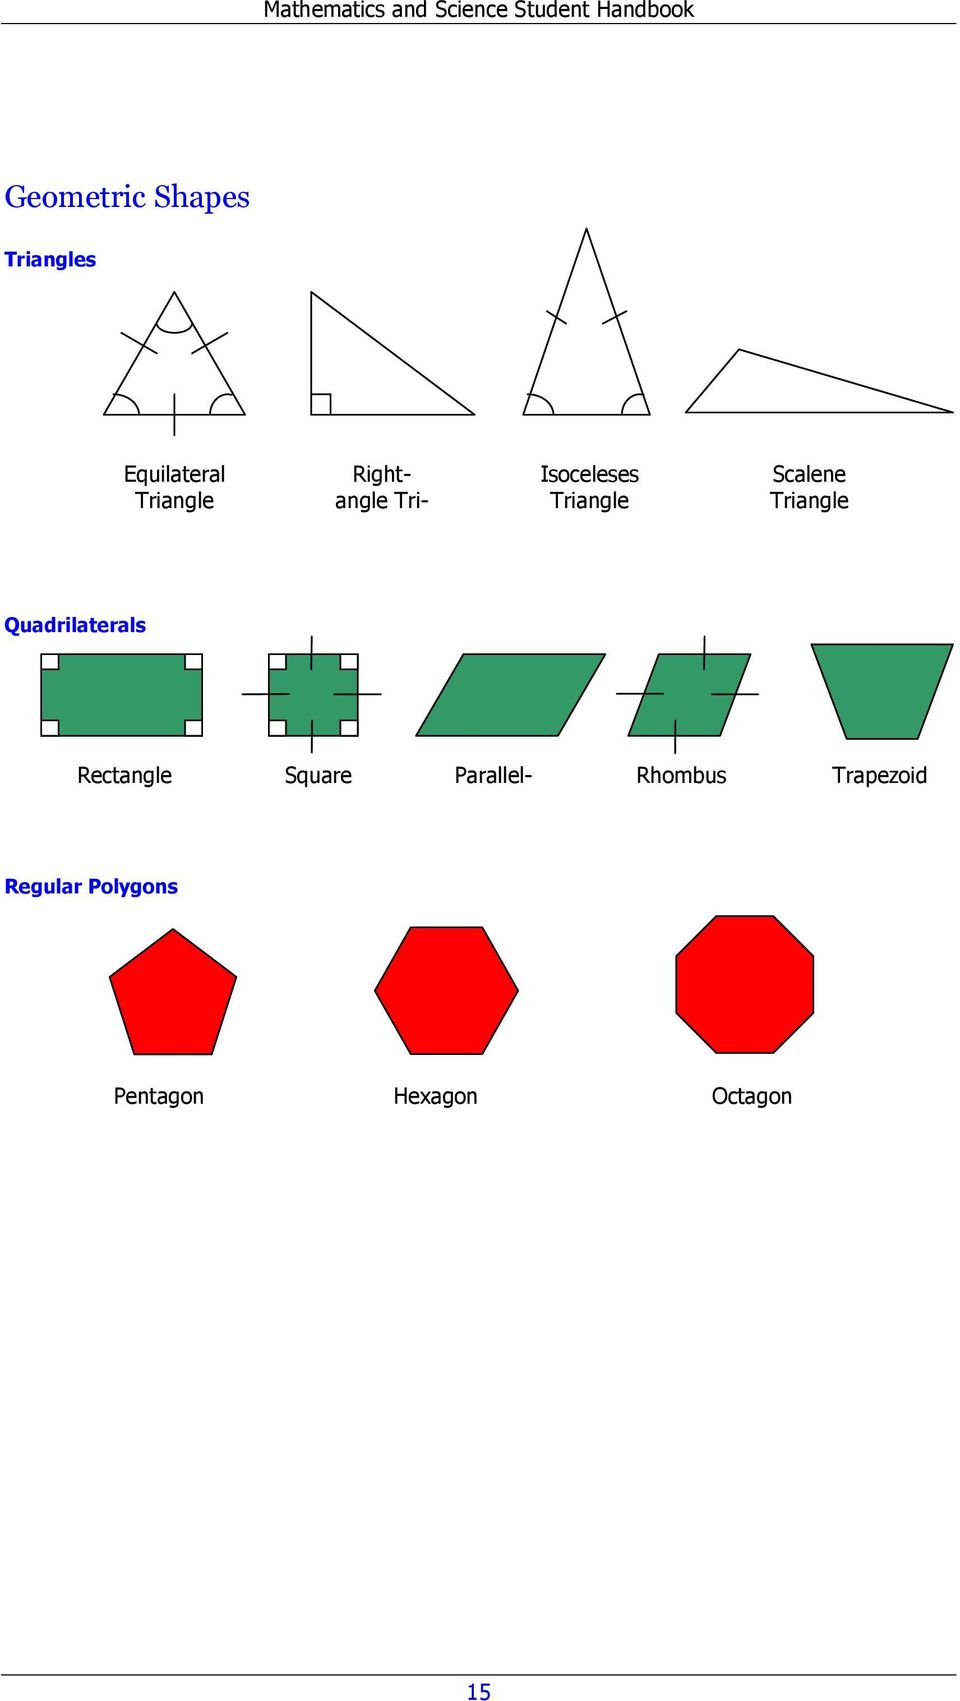 Triangle Quadrilaterals Rectangle Square